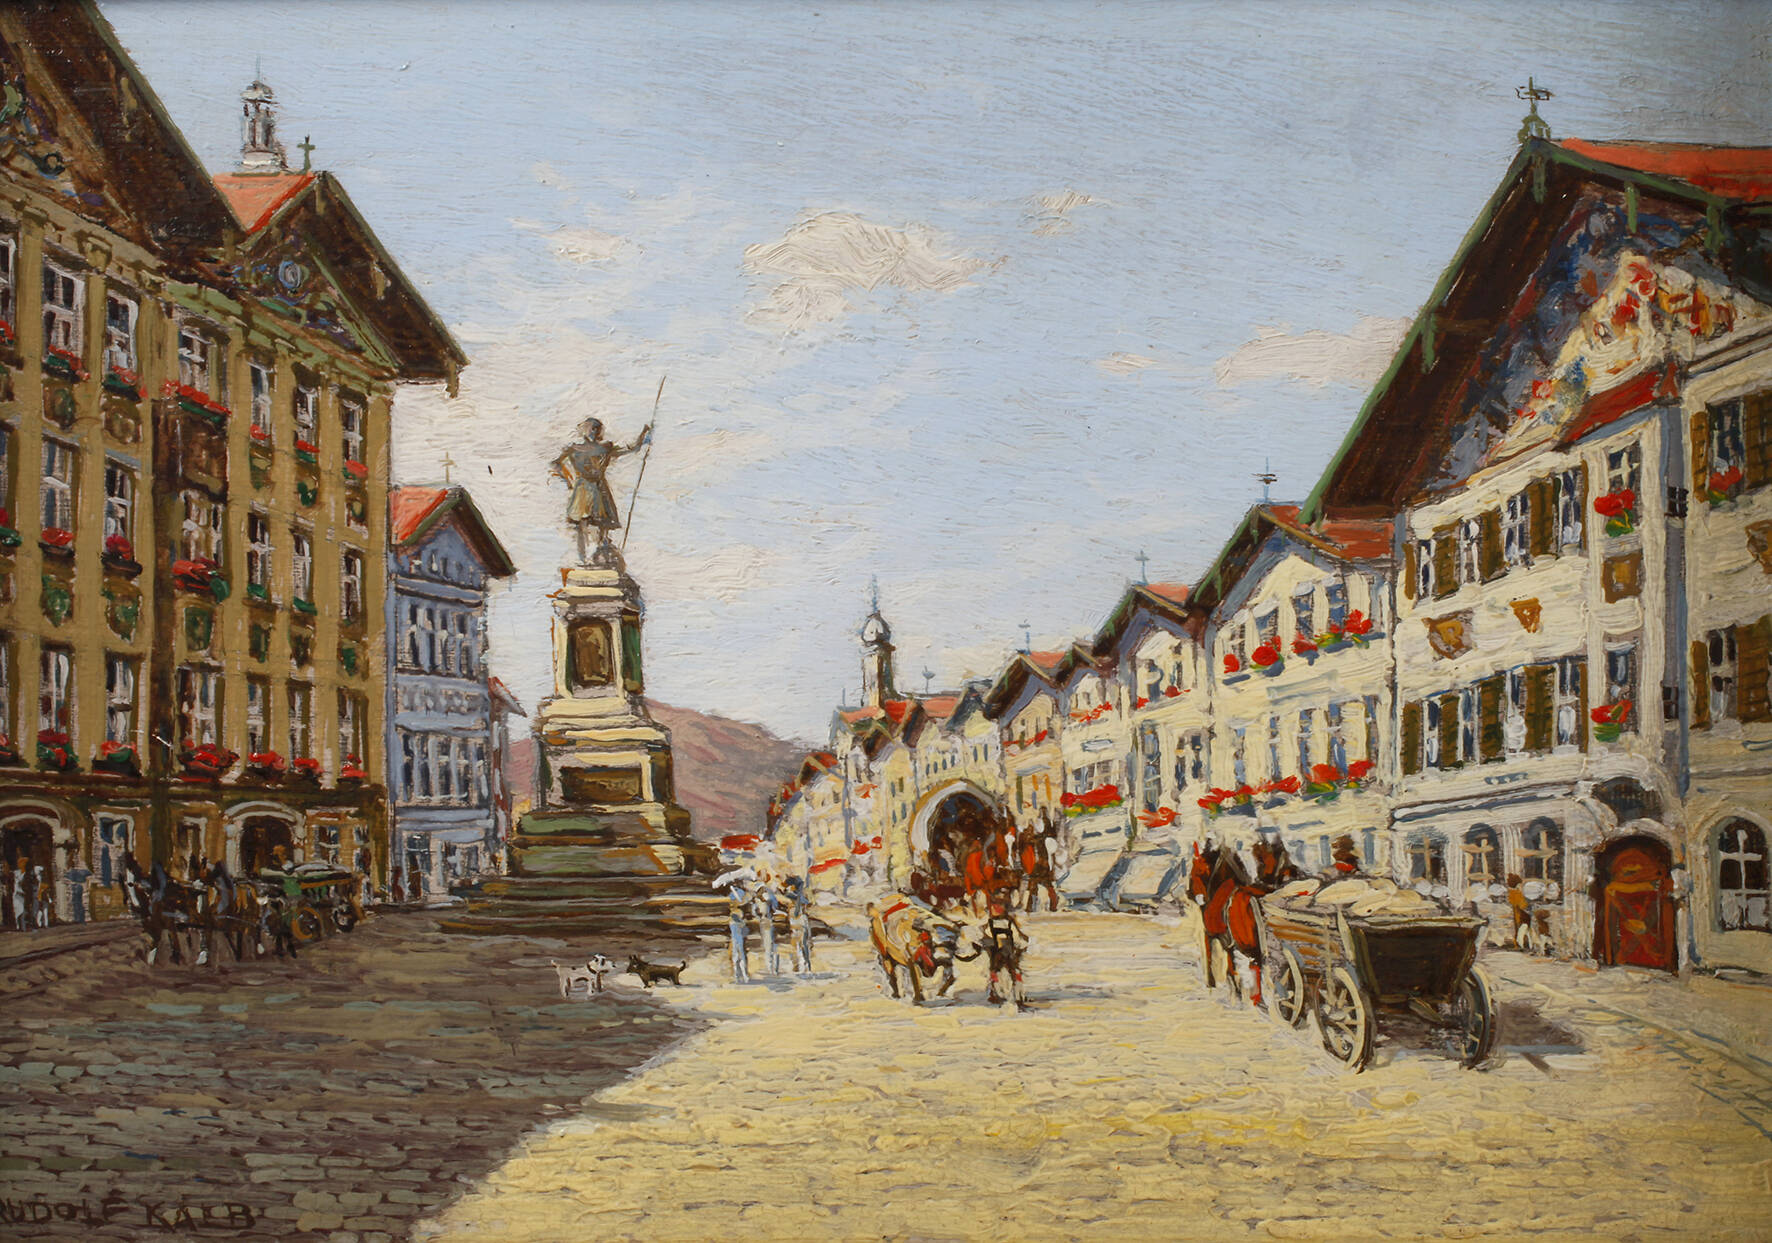 Rudolf Kalb, "Obere Marktstraße in Tölz"